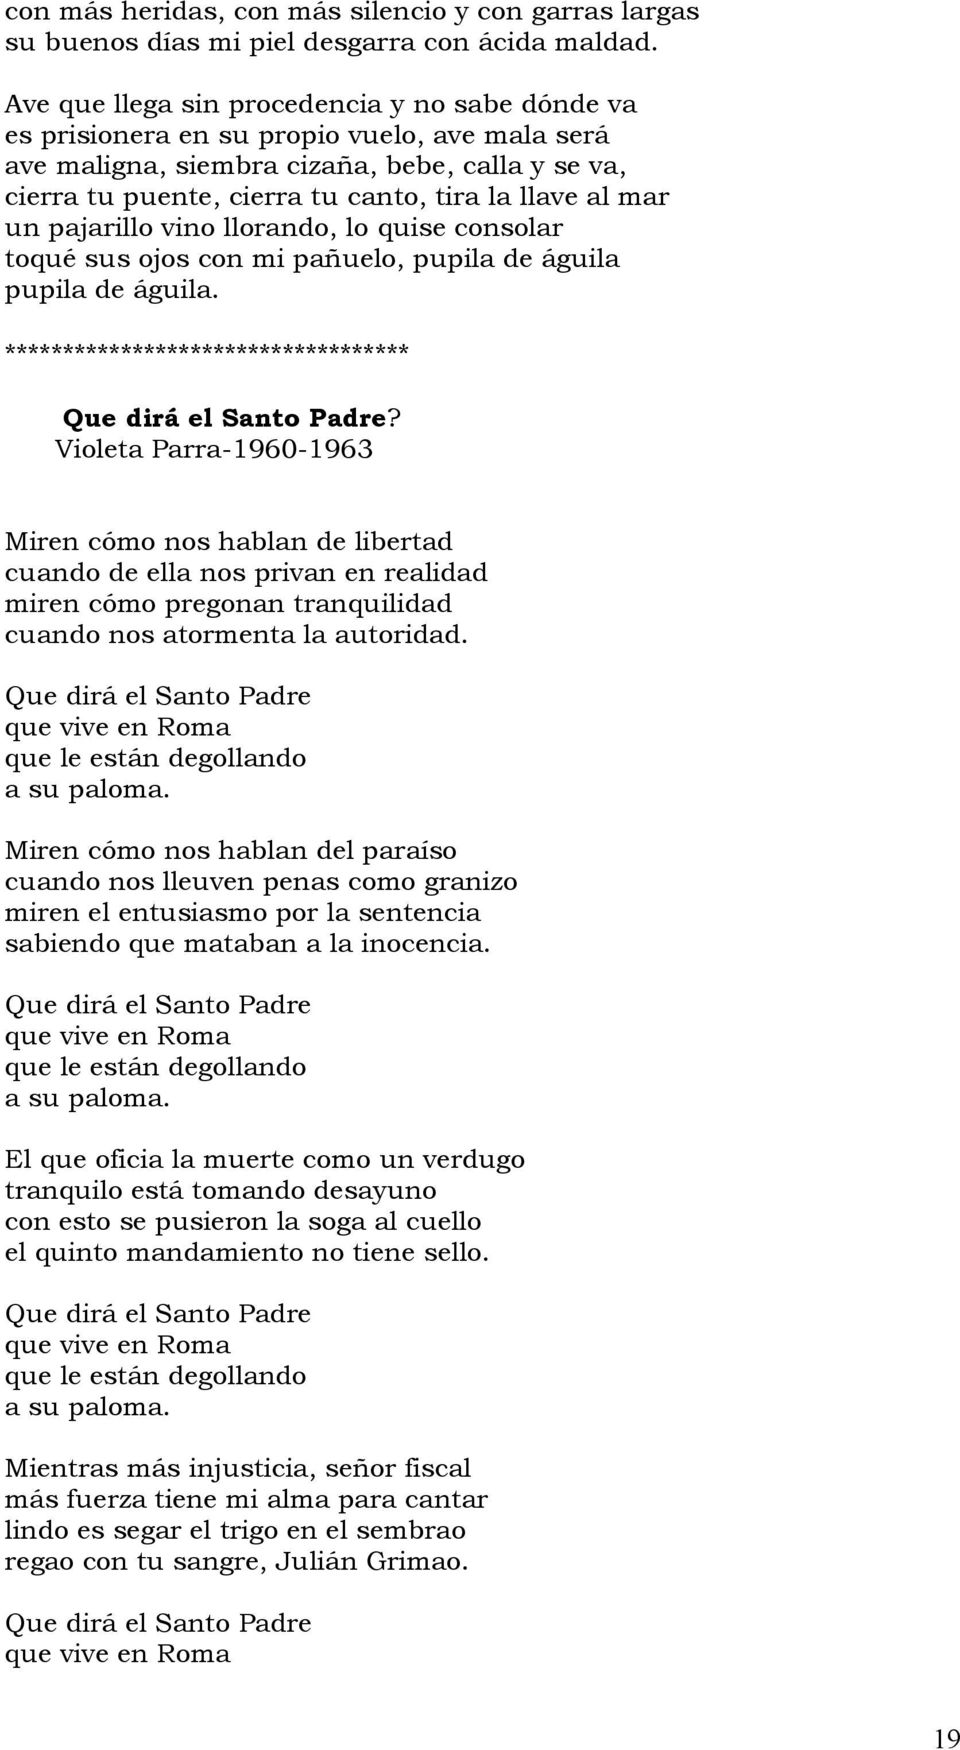 El siguiente material permite trabajar la vida y obra de Violeta Parra  desde la poesía, la biografía y la música. - PDF Descargar libre